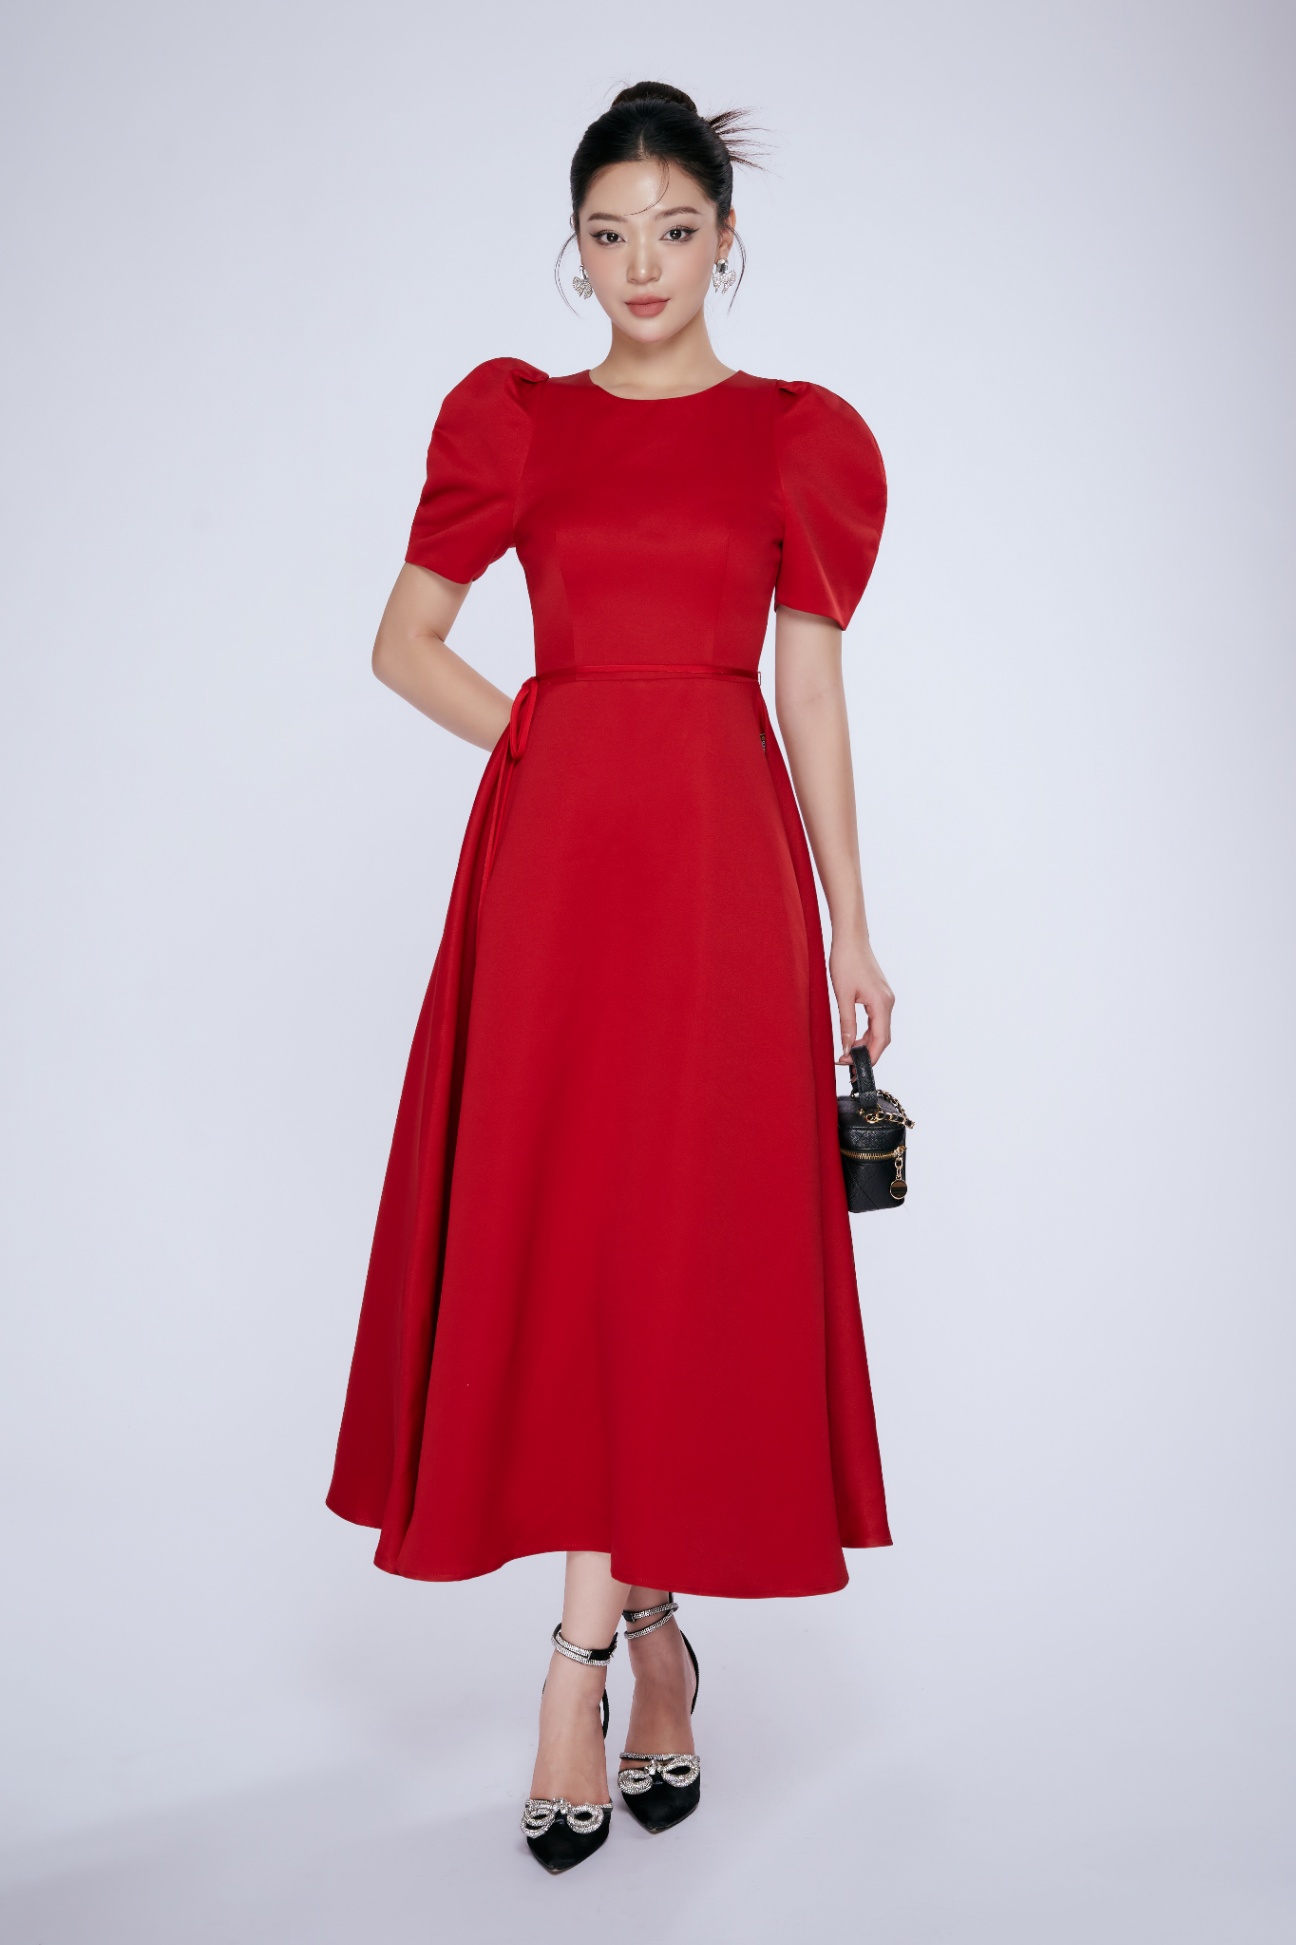 Váy xòe đỏ lượn eo tay bồng - 3666